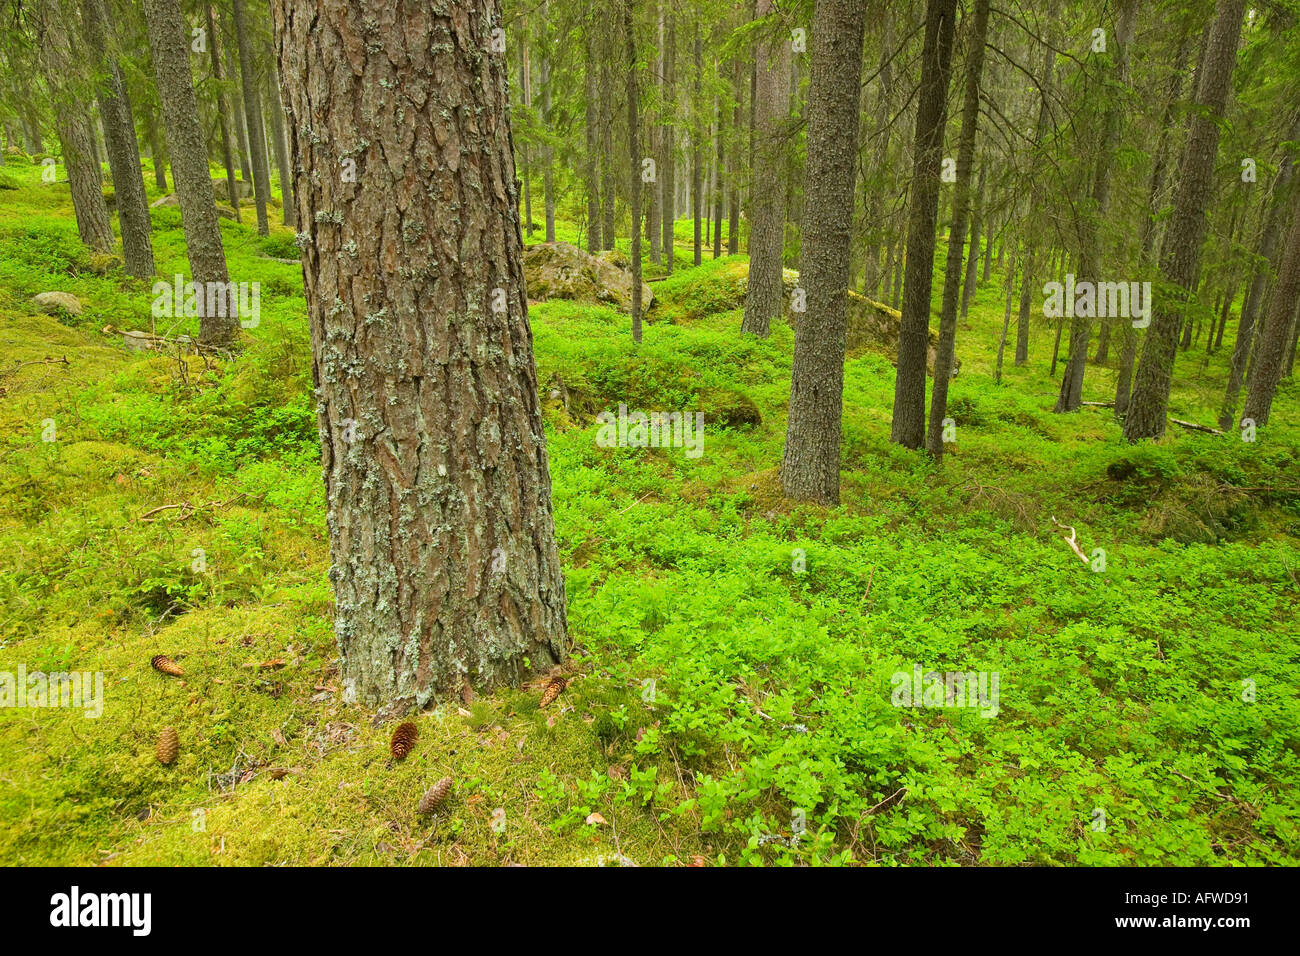 Finnish Forest près de Torsby dans le comté de Värmland Suède Banque D'Images